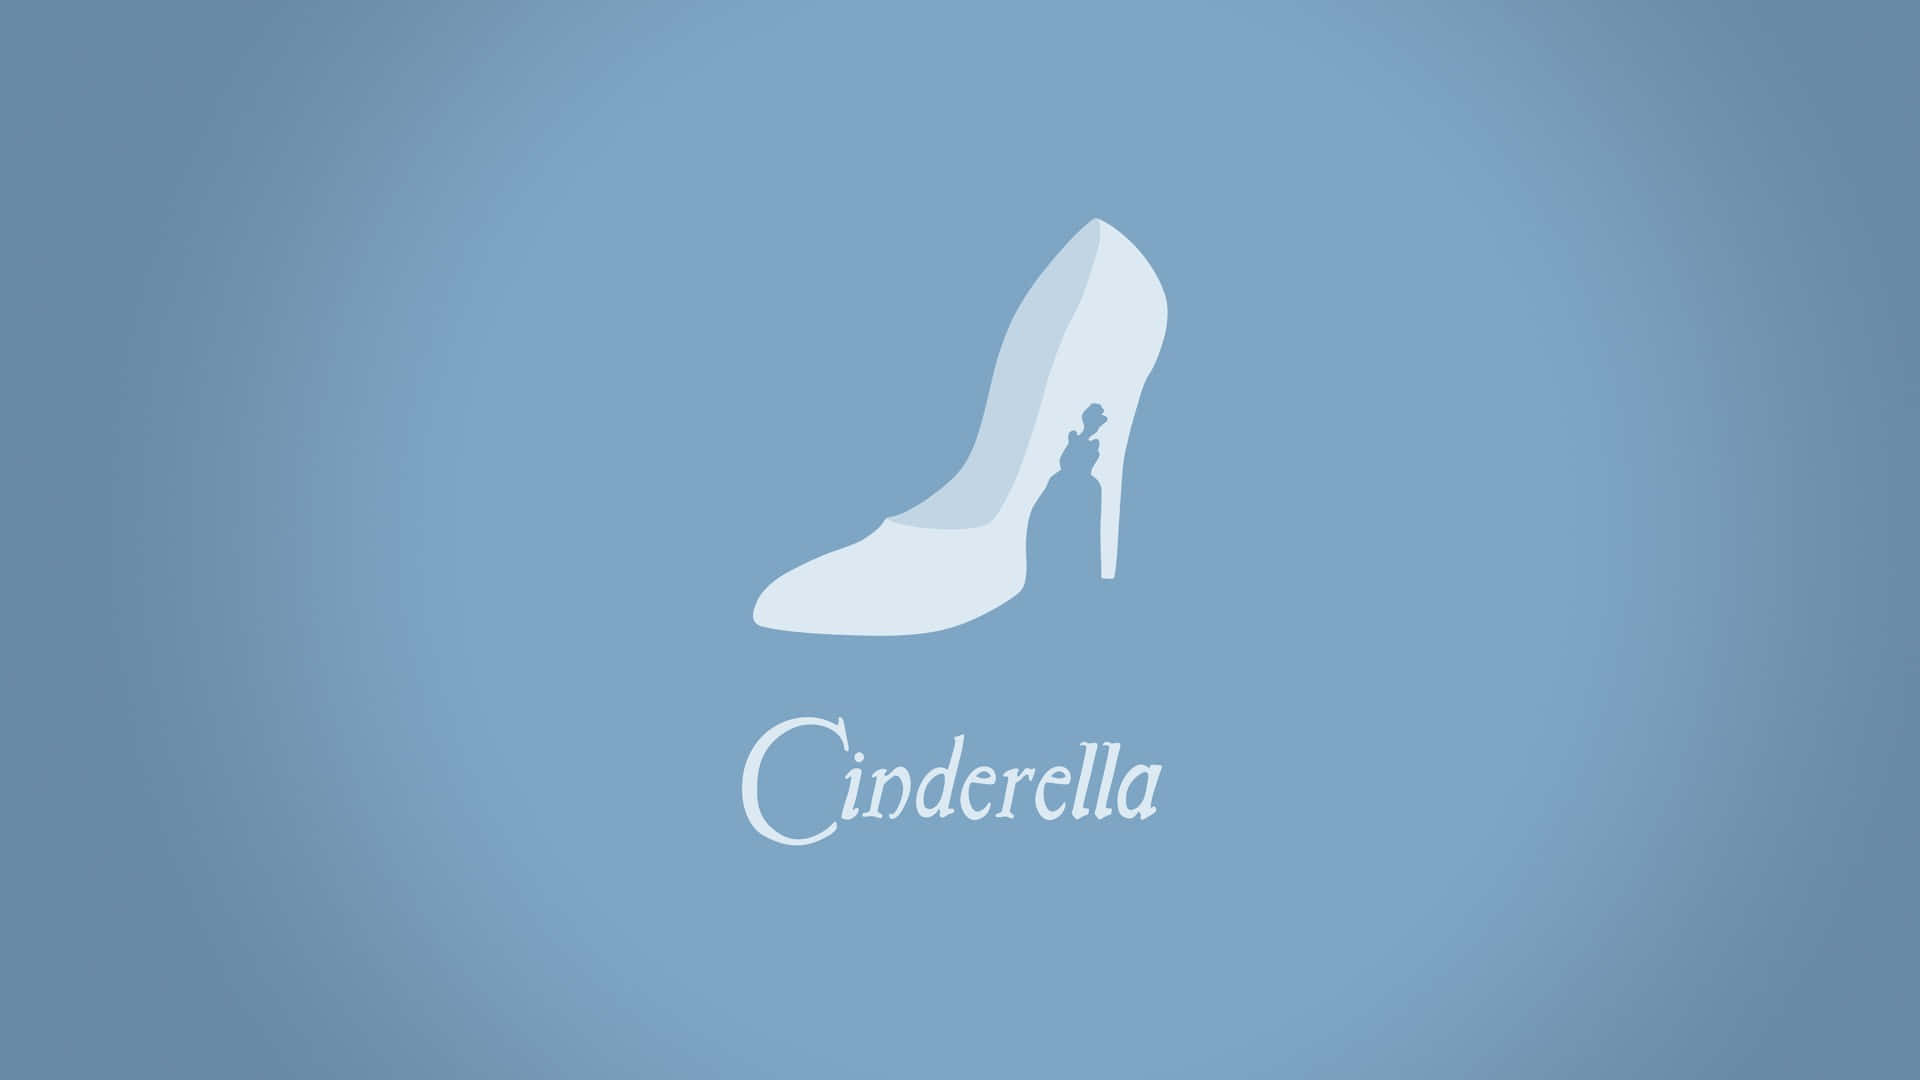 Cinderellaschuh-symbol Auf Blauem Hintergrund